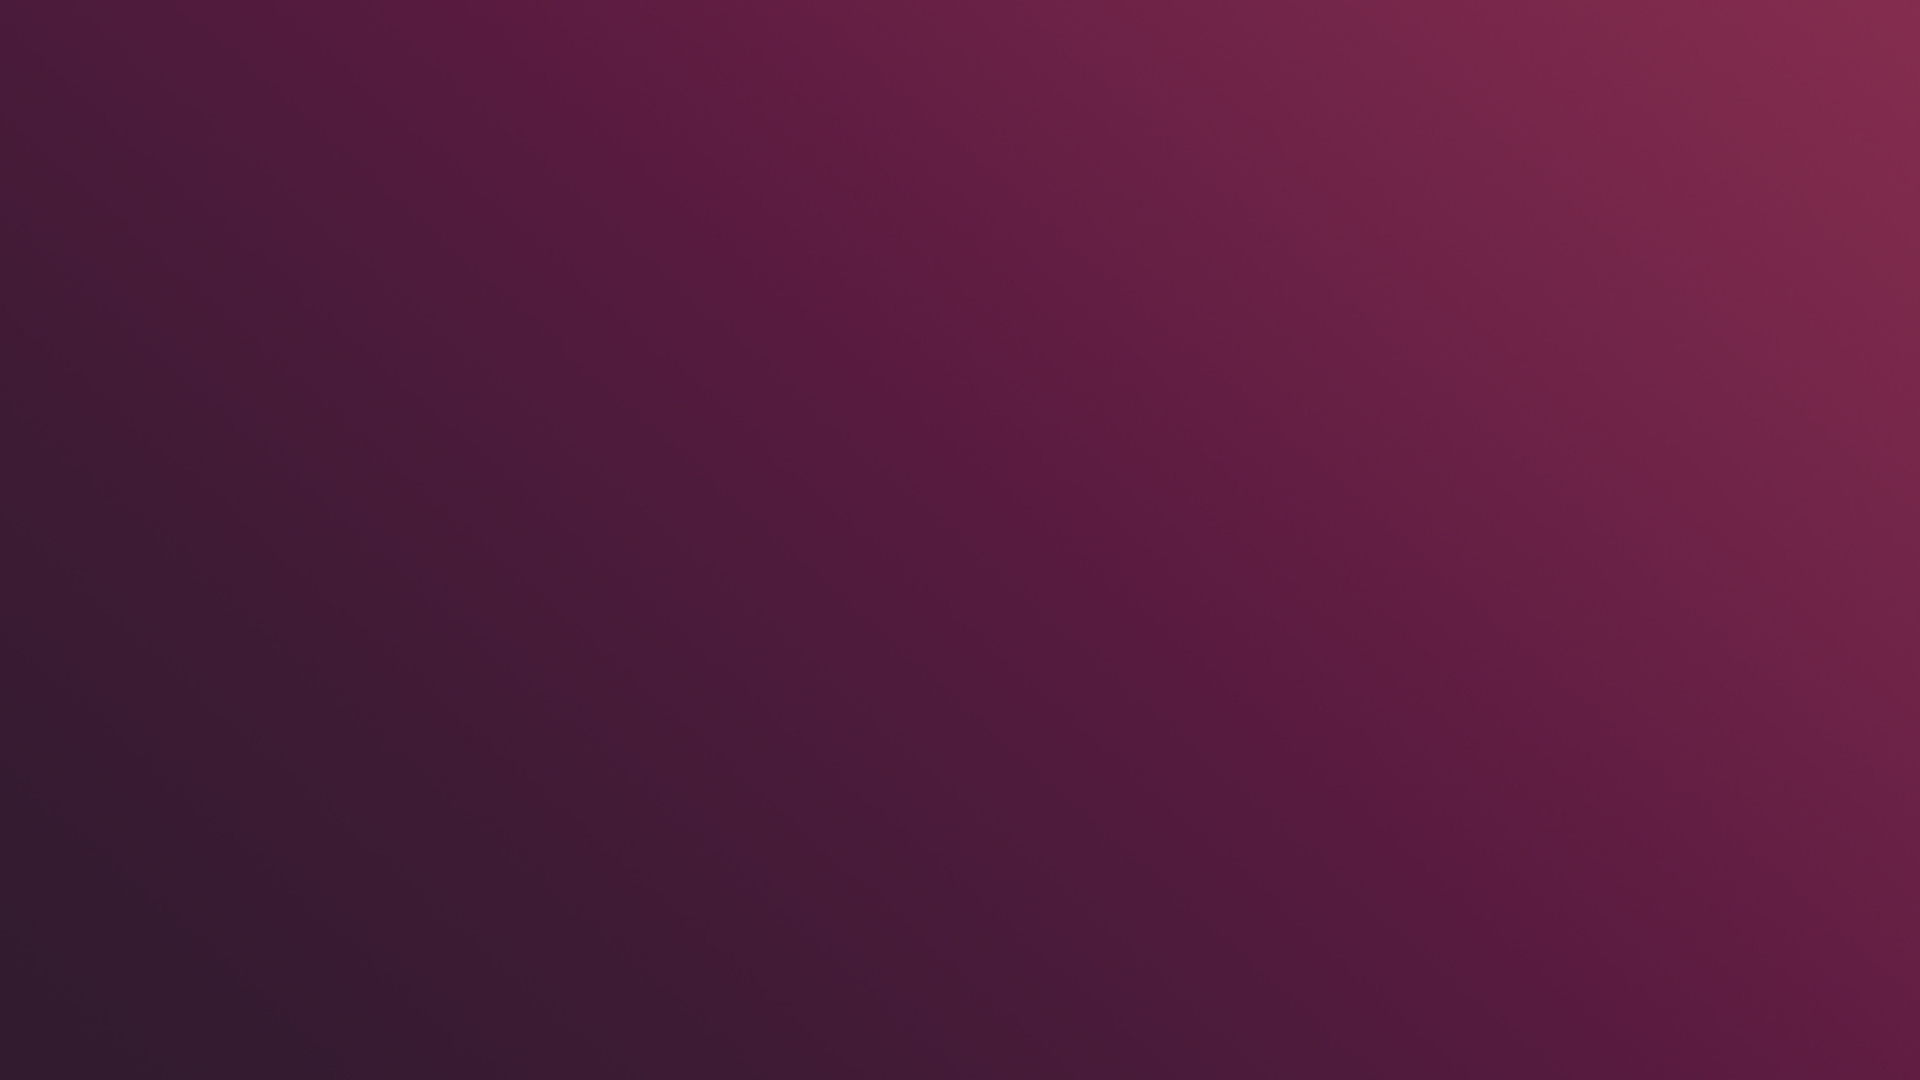 Ubuntu Wallpaper For